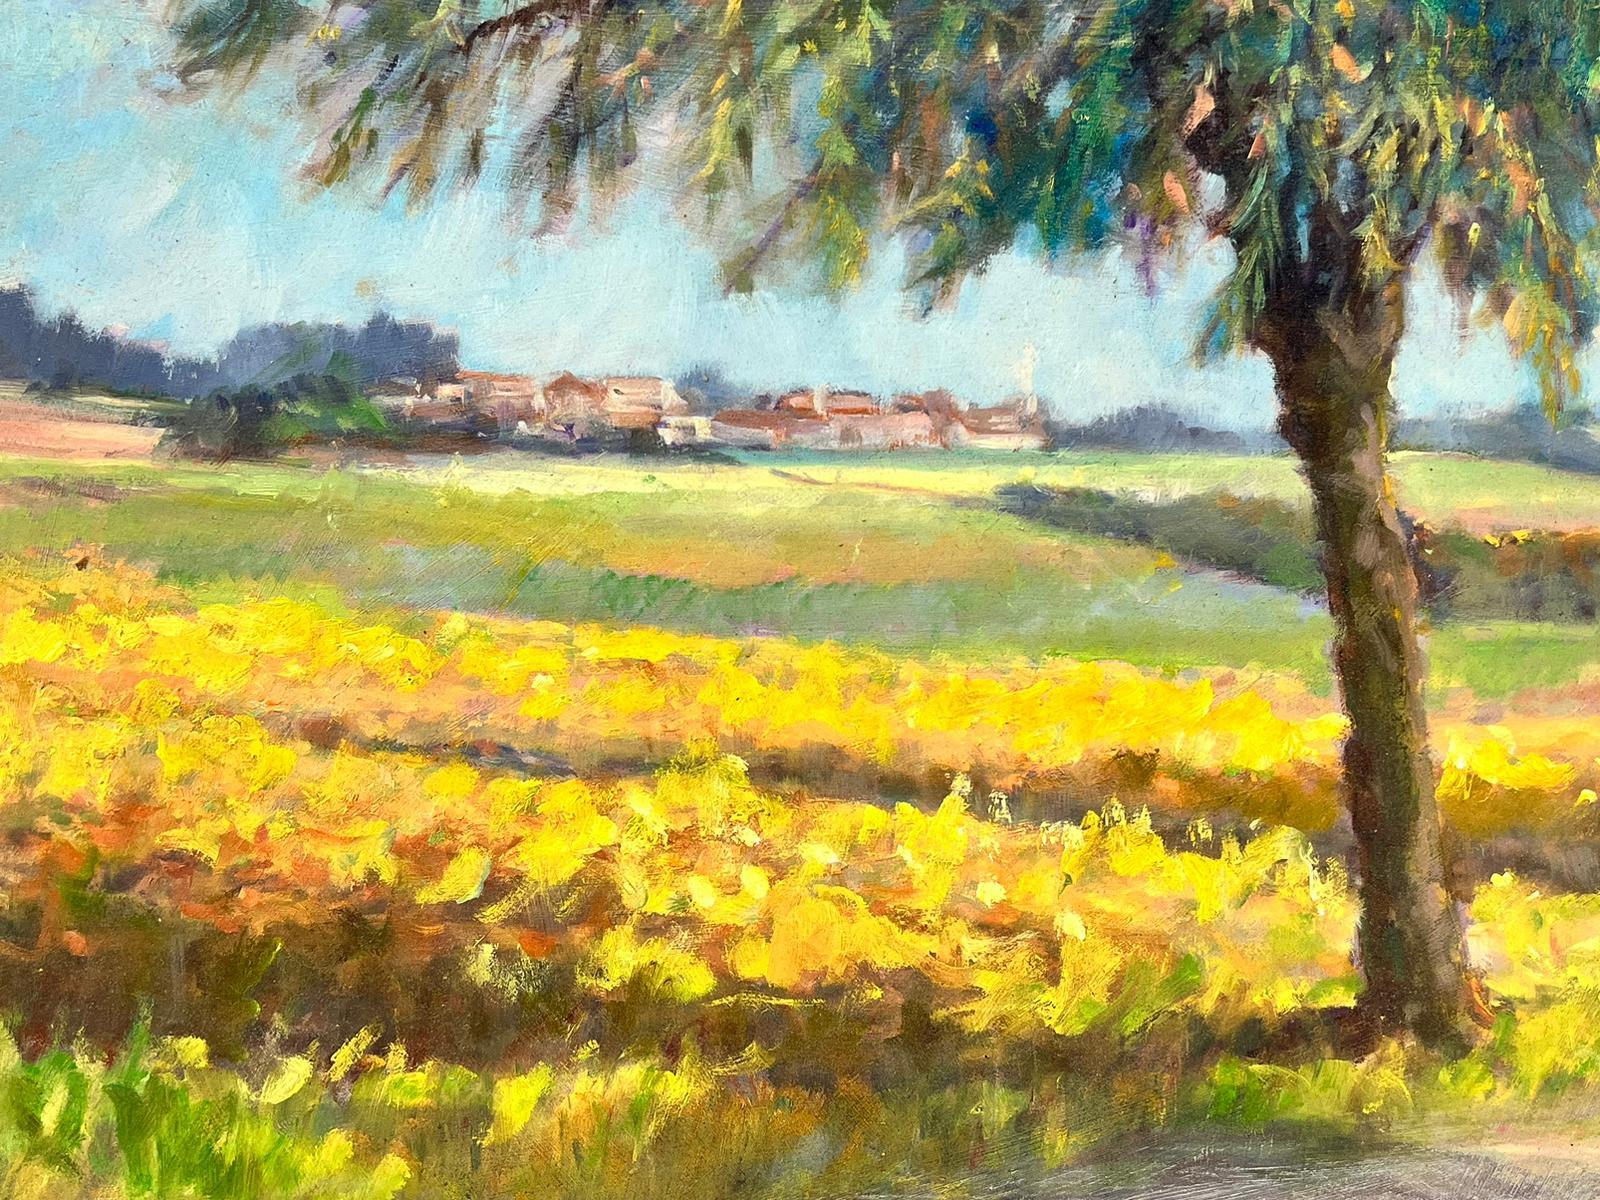 Auvers-sur-Oise France Golden Farm Fields Rural Landscape Signed Oil Painting For Sale 3